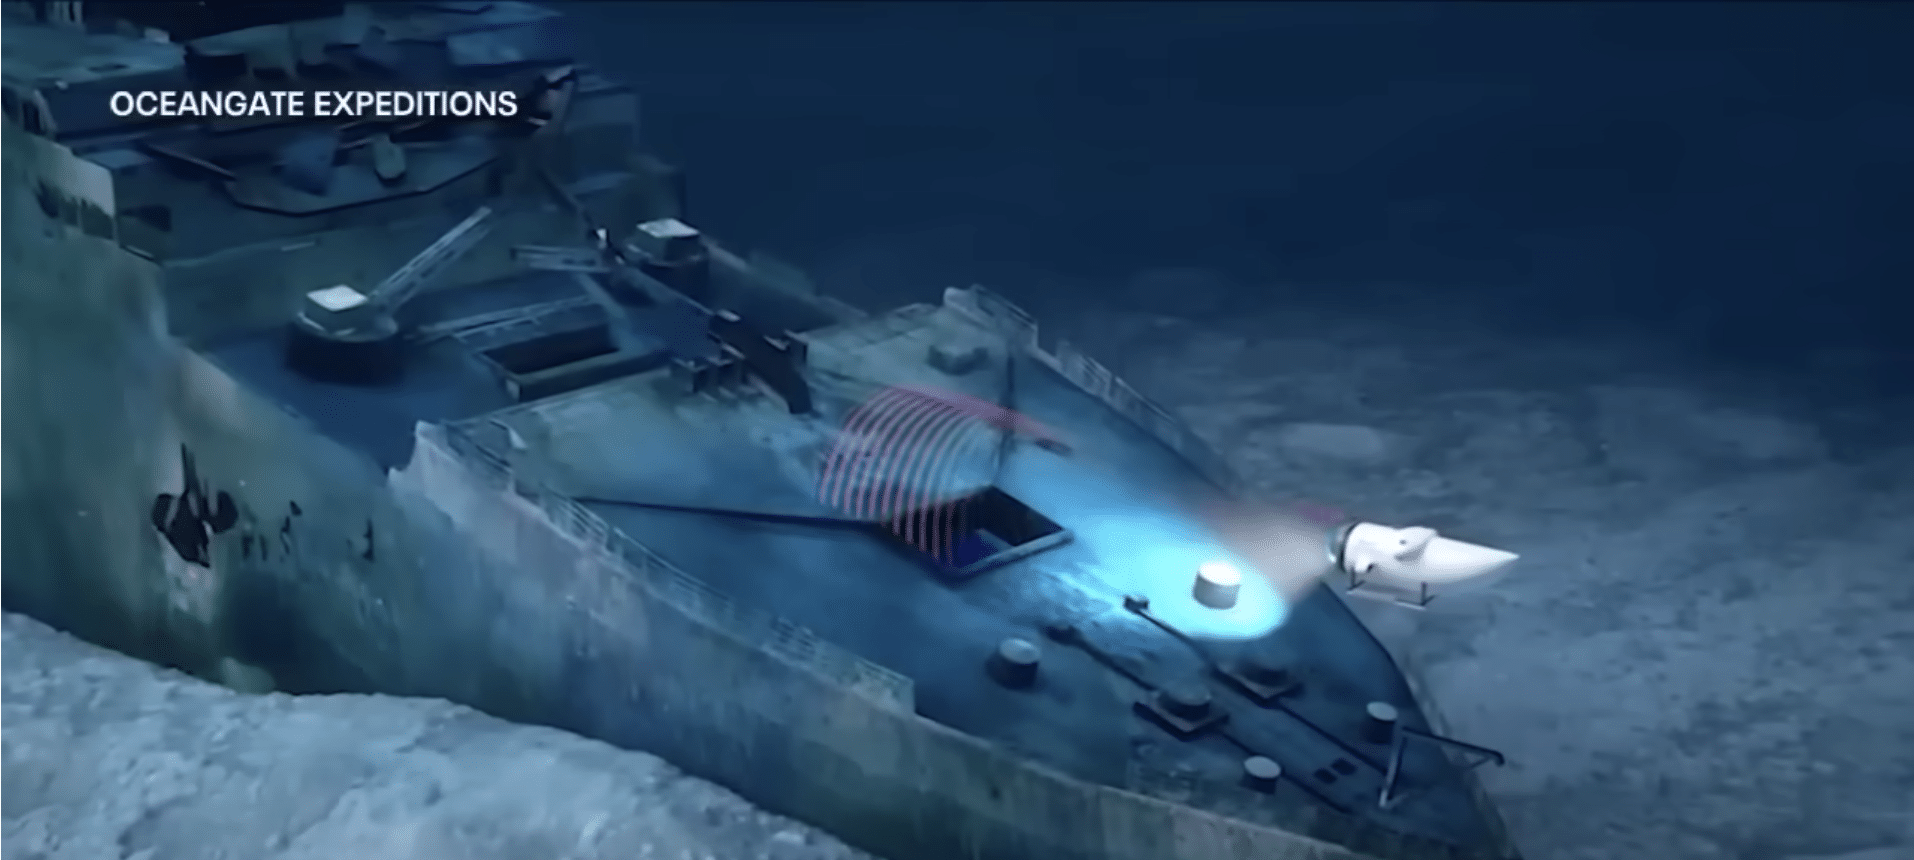 U.S. Navy heard what it believed was Titan implosion days ago